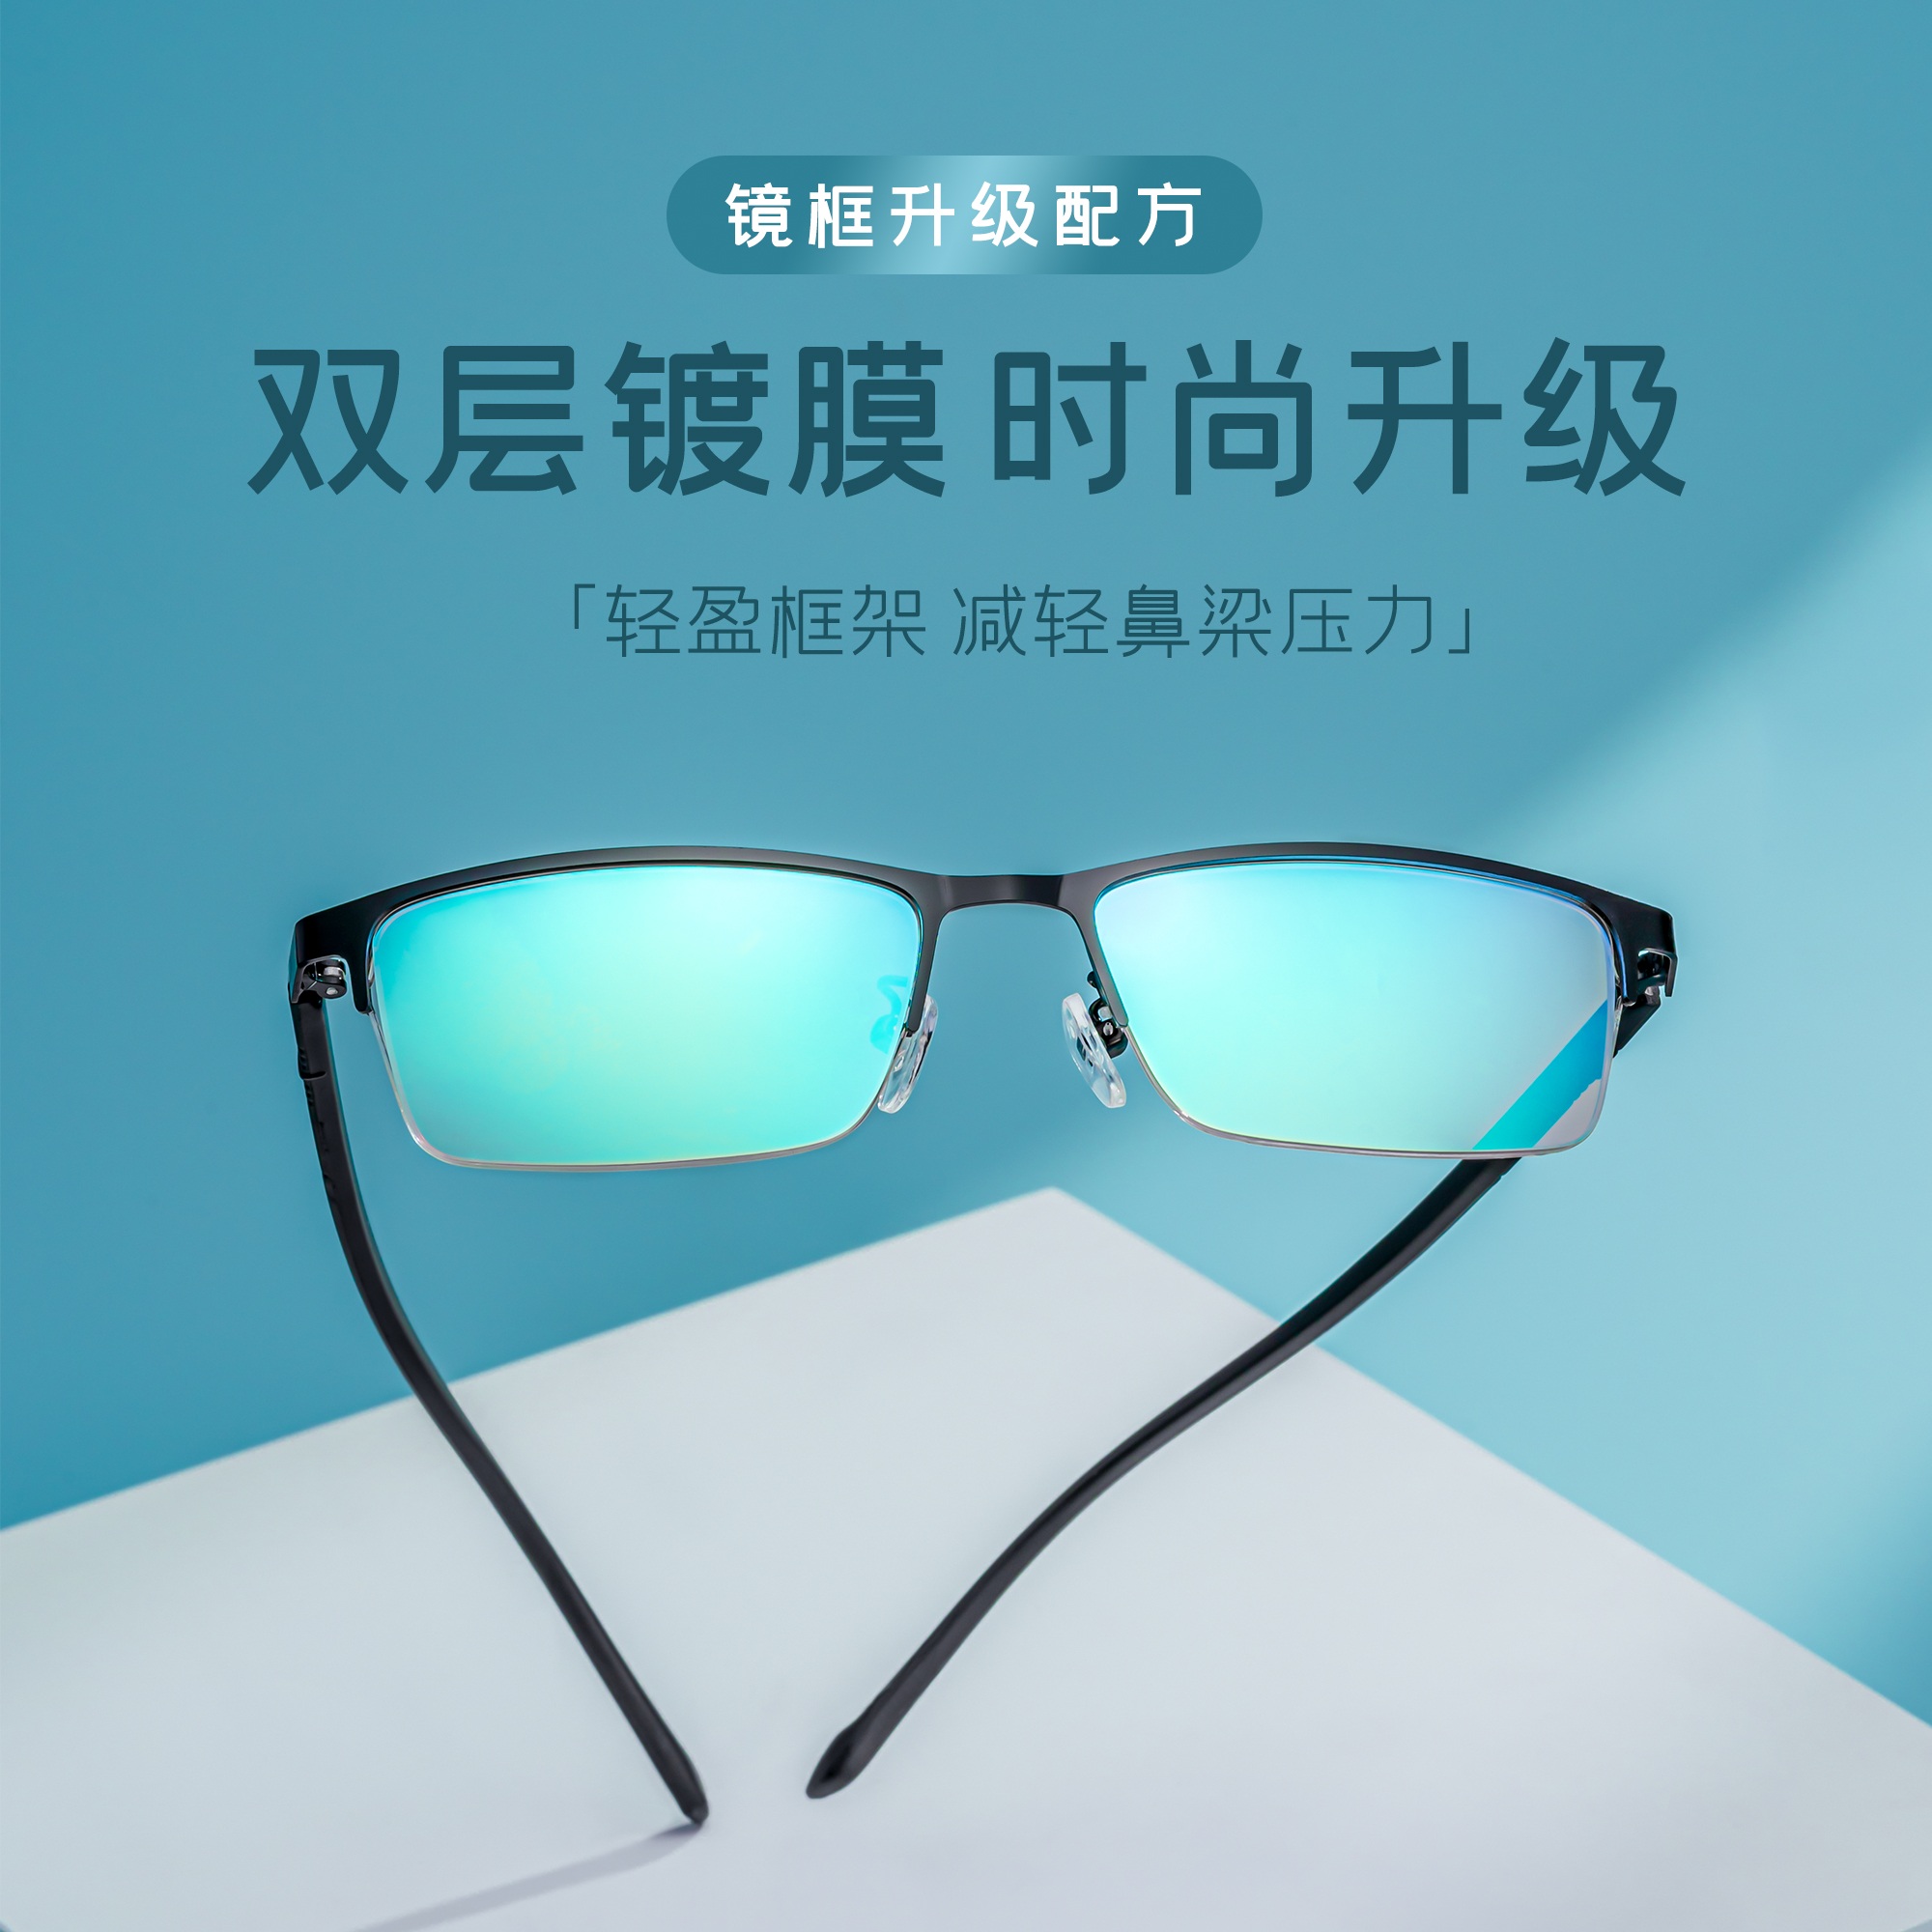 正品红绿色盲眼镜近视隐形纠正送电子图缓解专用可配近视色弱眼镜 - 图2